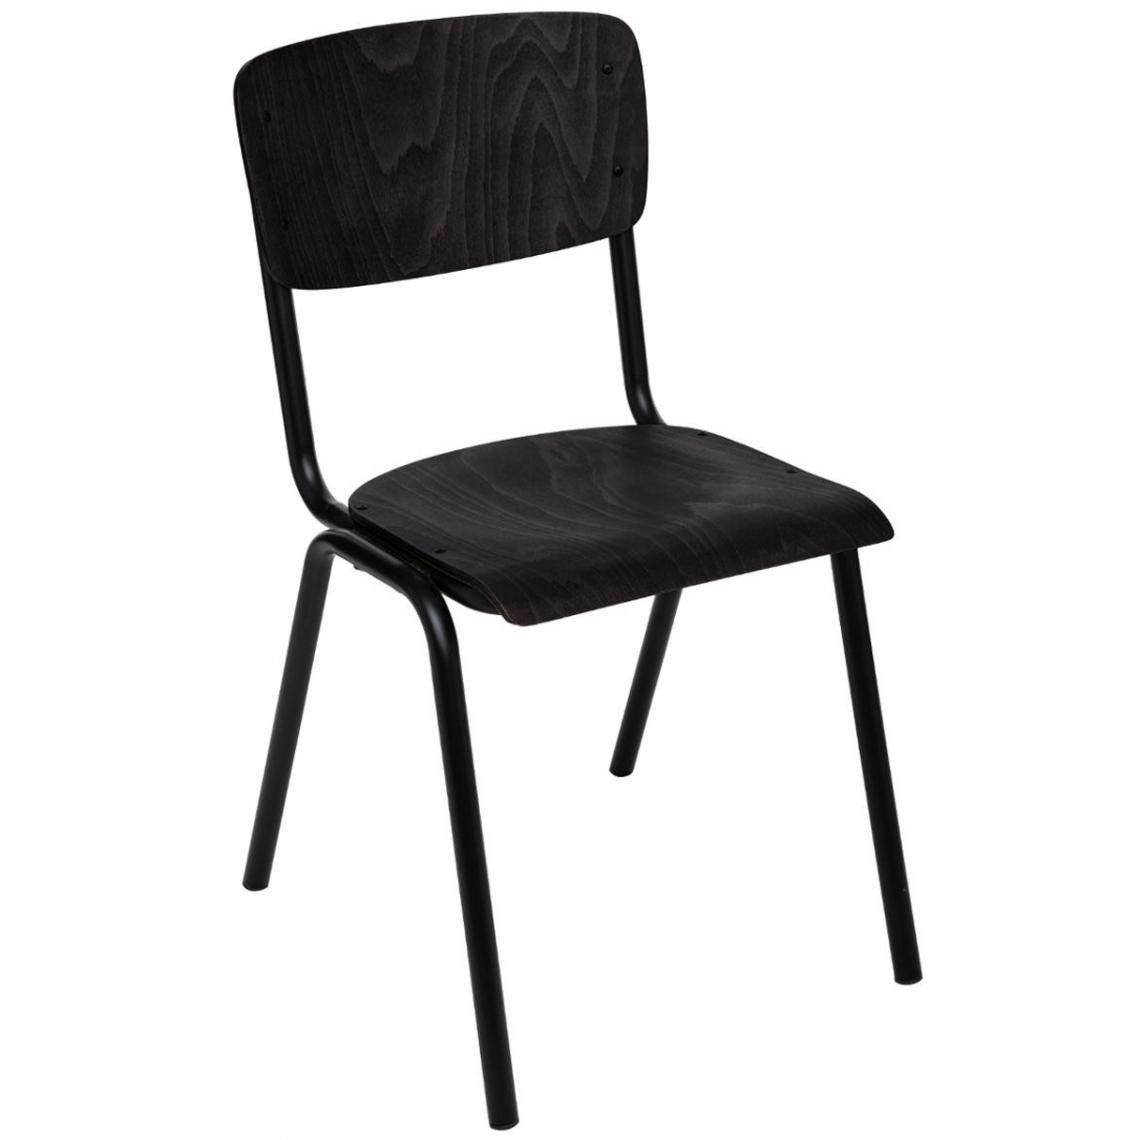 Pegane - Chaise en fer et bois coloris noir - L. 44 x l. 47,5 x H. 83 cm - Chaises